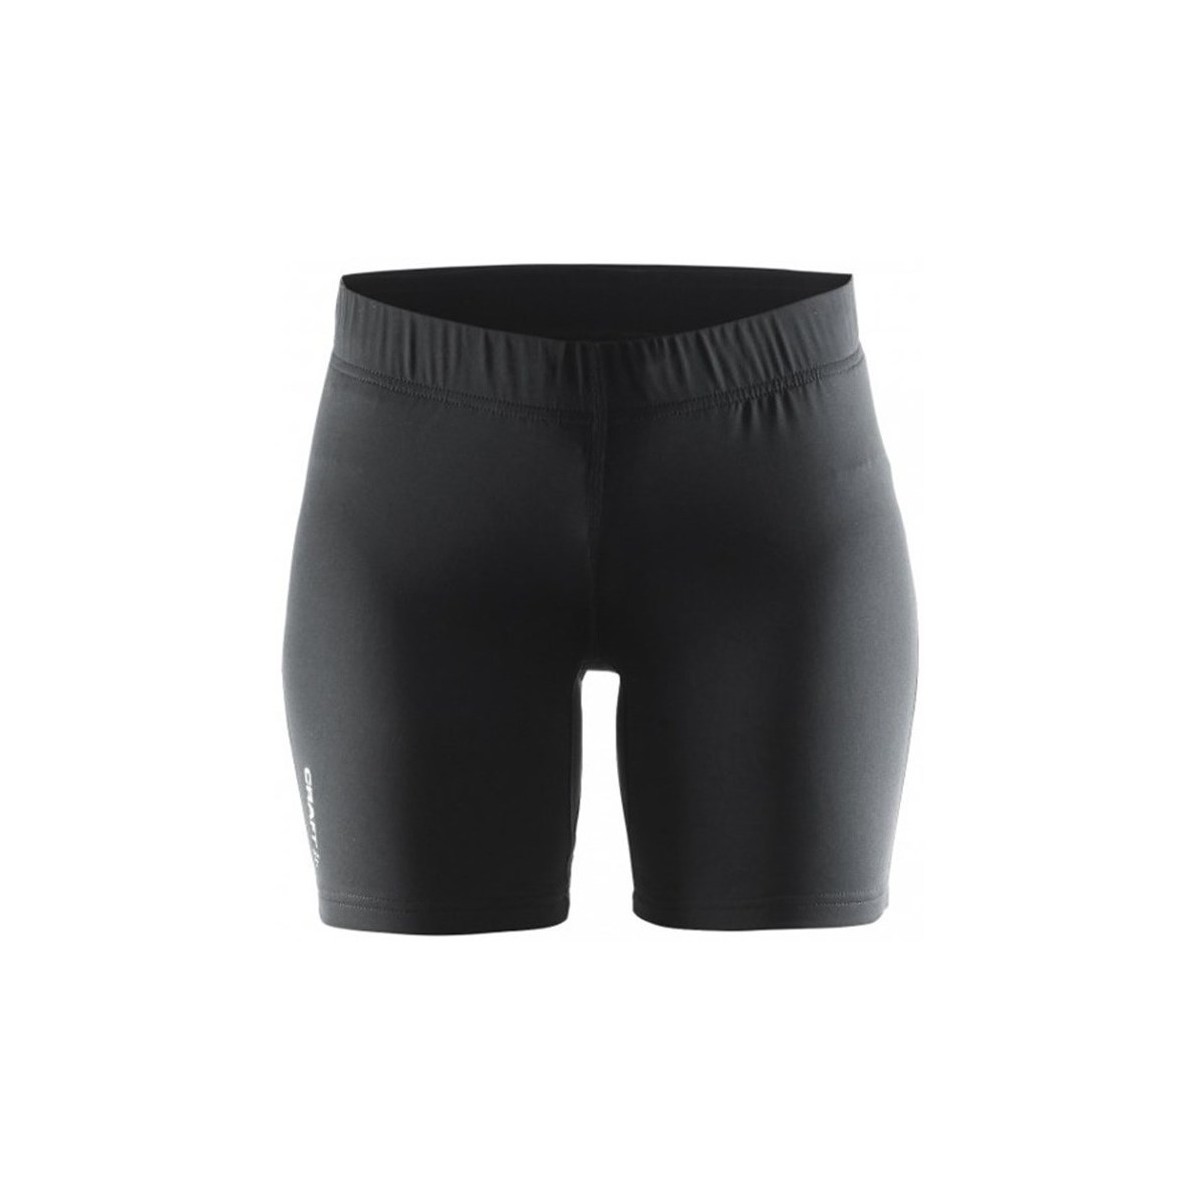 Îmbracaminte Femei Pantaloni trei sferturi Craft Prime Short Tight Negru